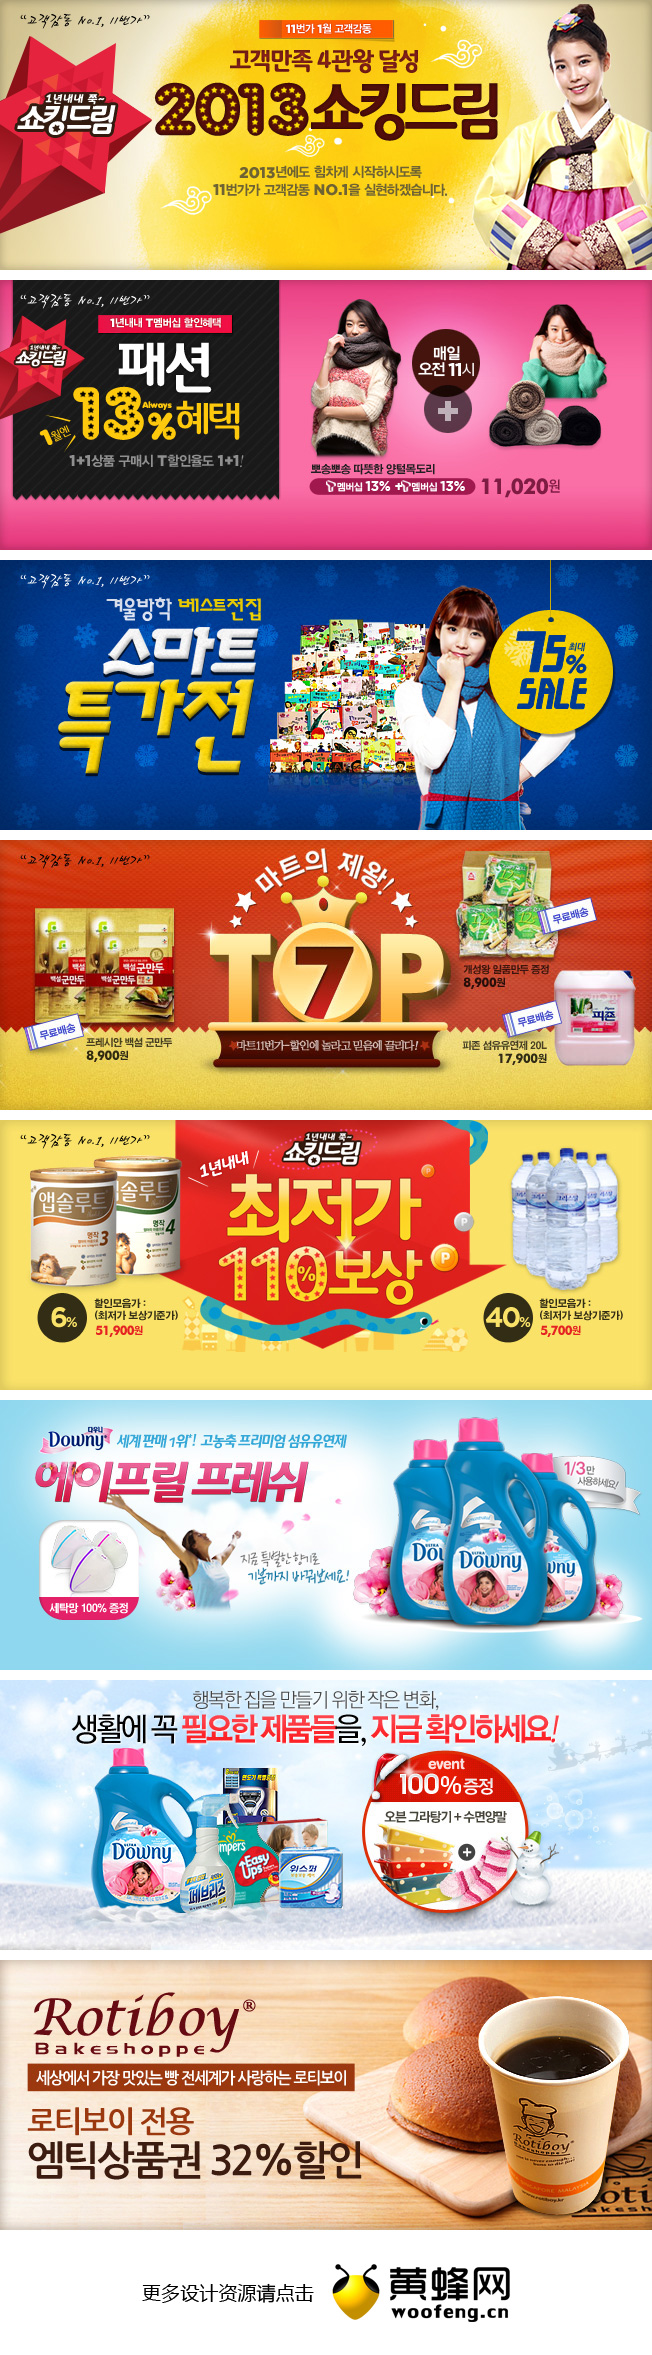 韩国购物网站促销广告banner设计欣赏0102